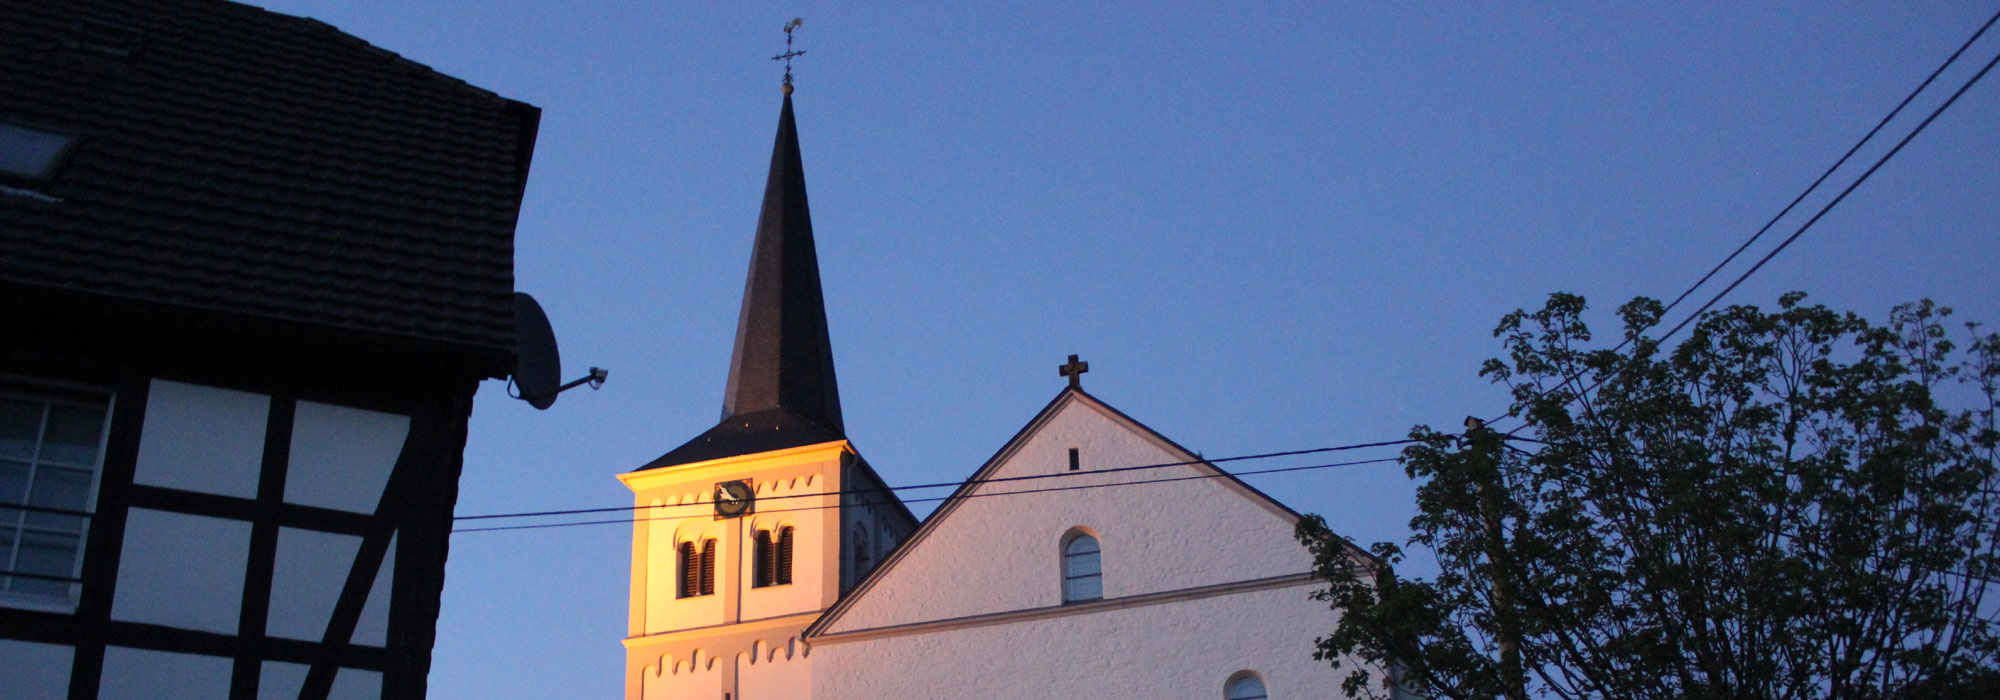 Pfarrkirche Sankt Laurentius, Asbach